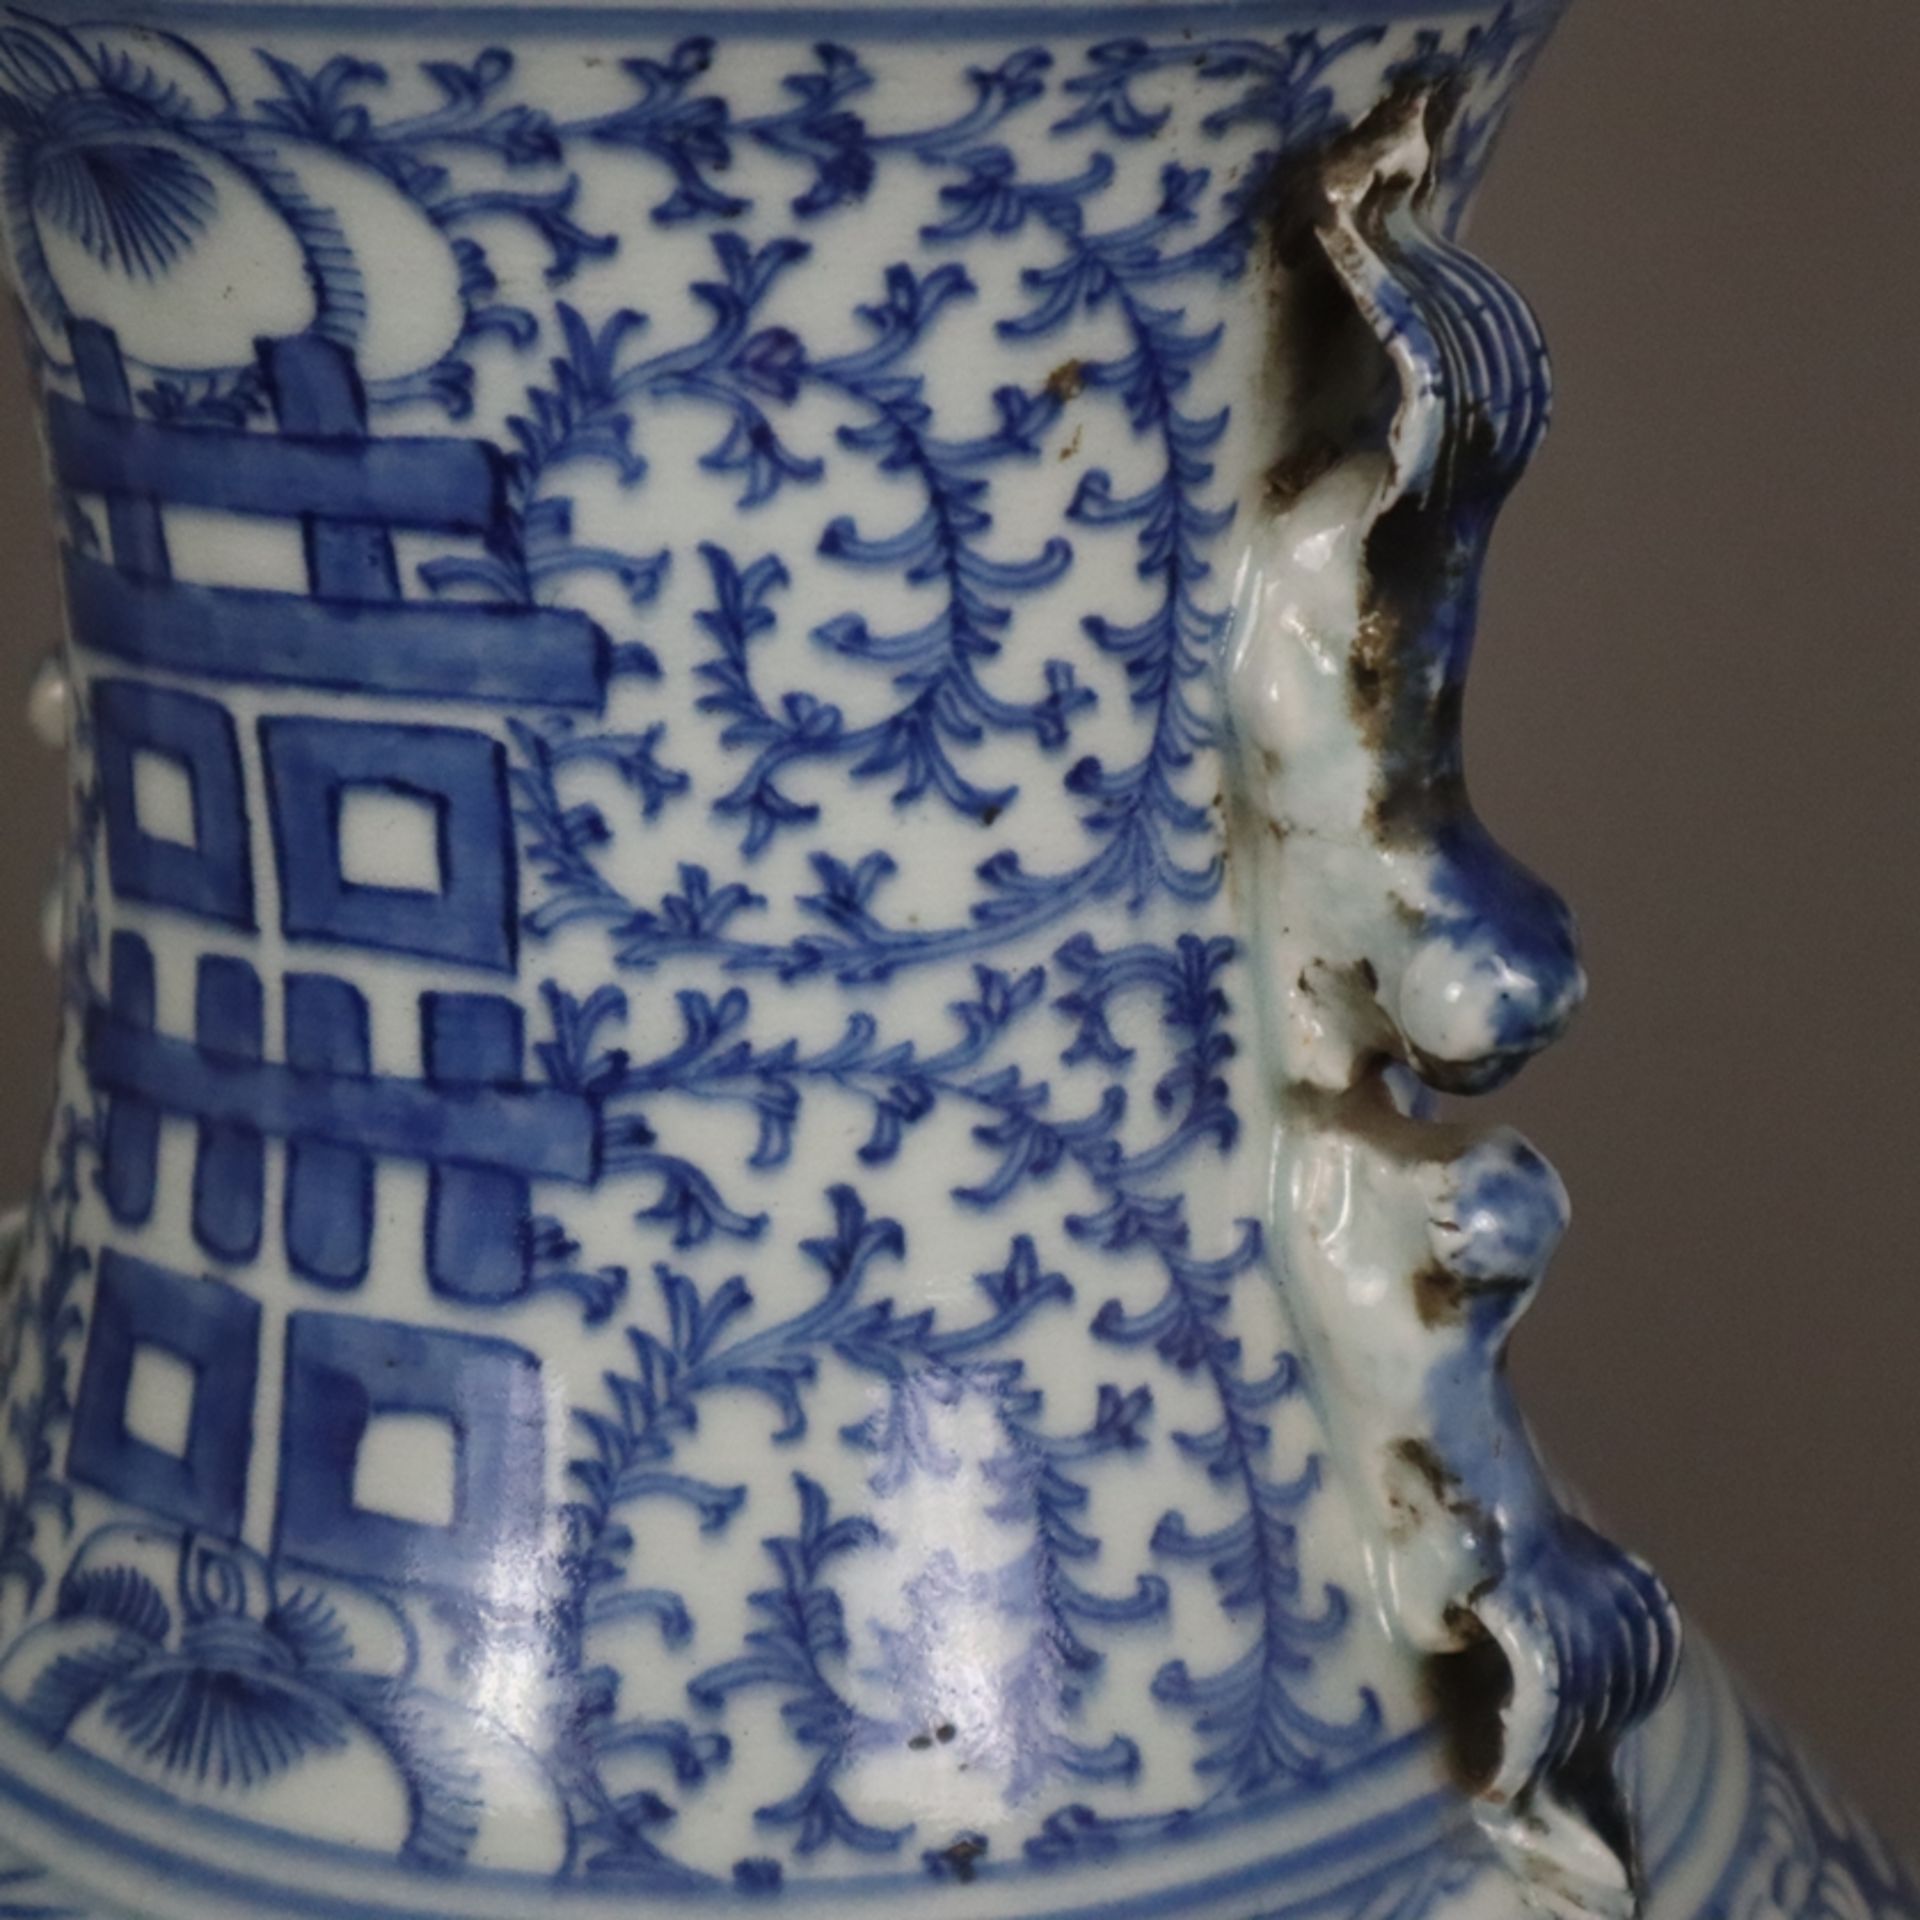 Blau-weiße Bodenvase - China, späte Qing-Dynastie, Tongzhi 1862-1875, sog. „Hochzeitsvase“, auf der - Bild 3 aus 14